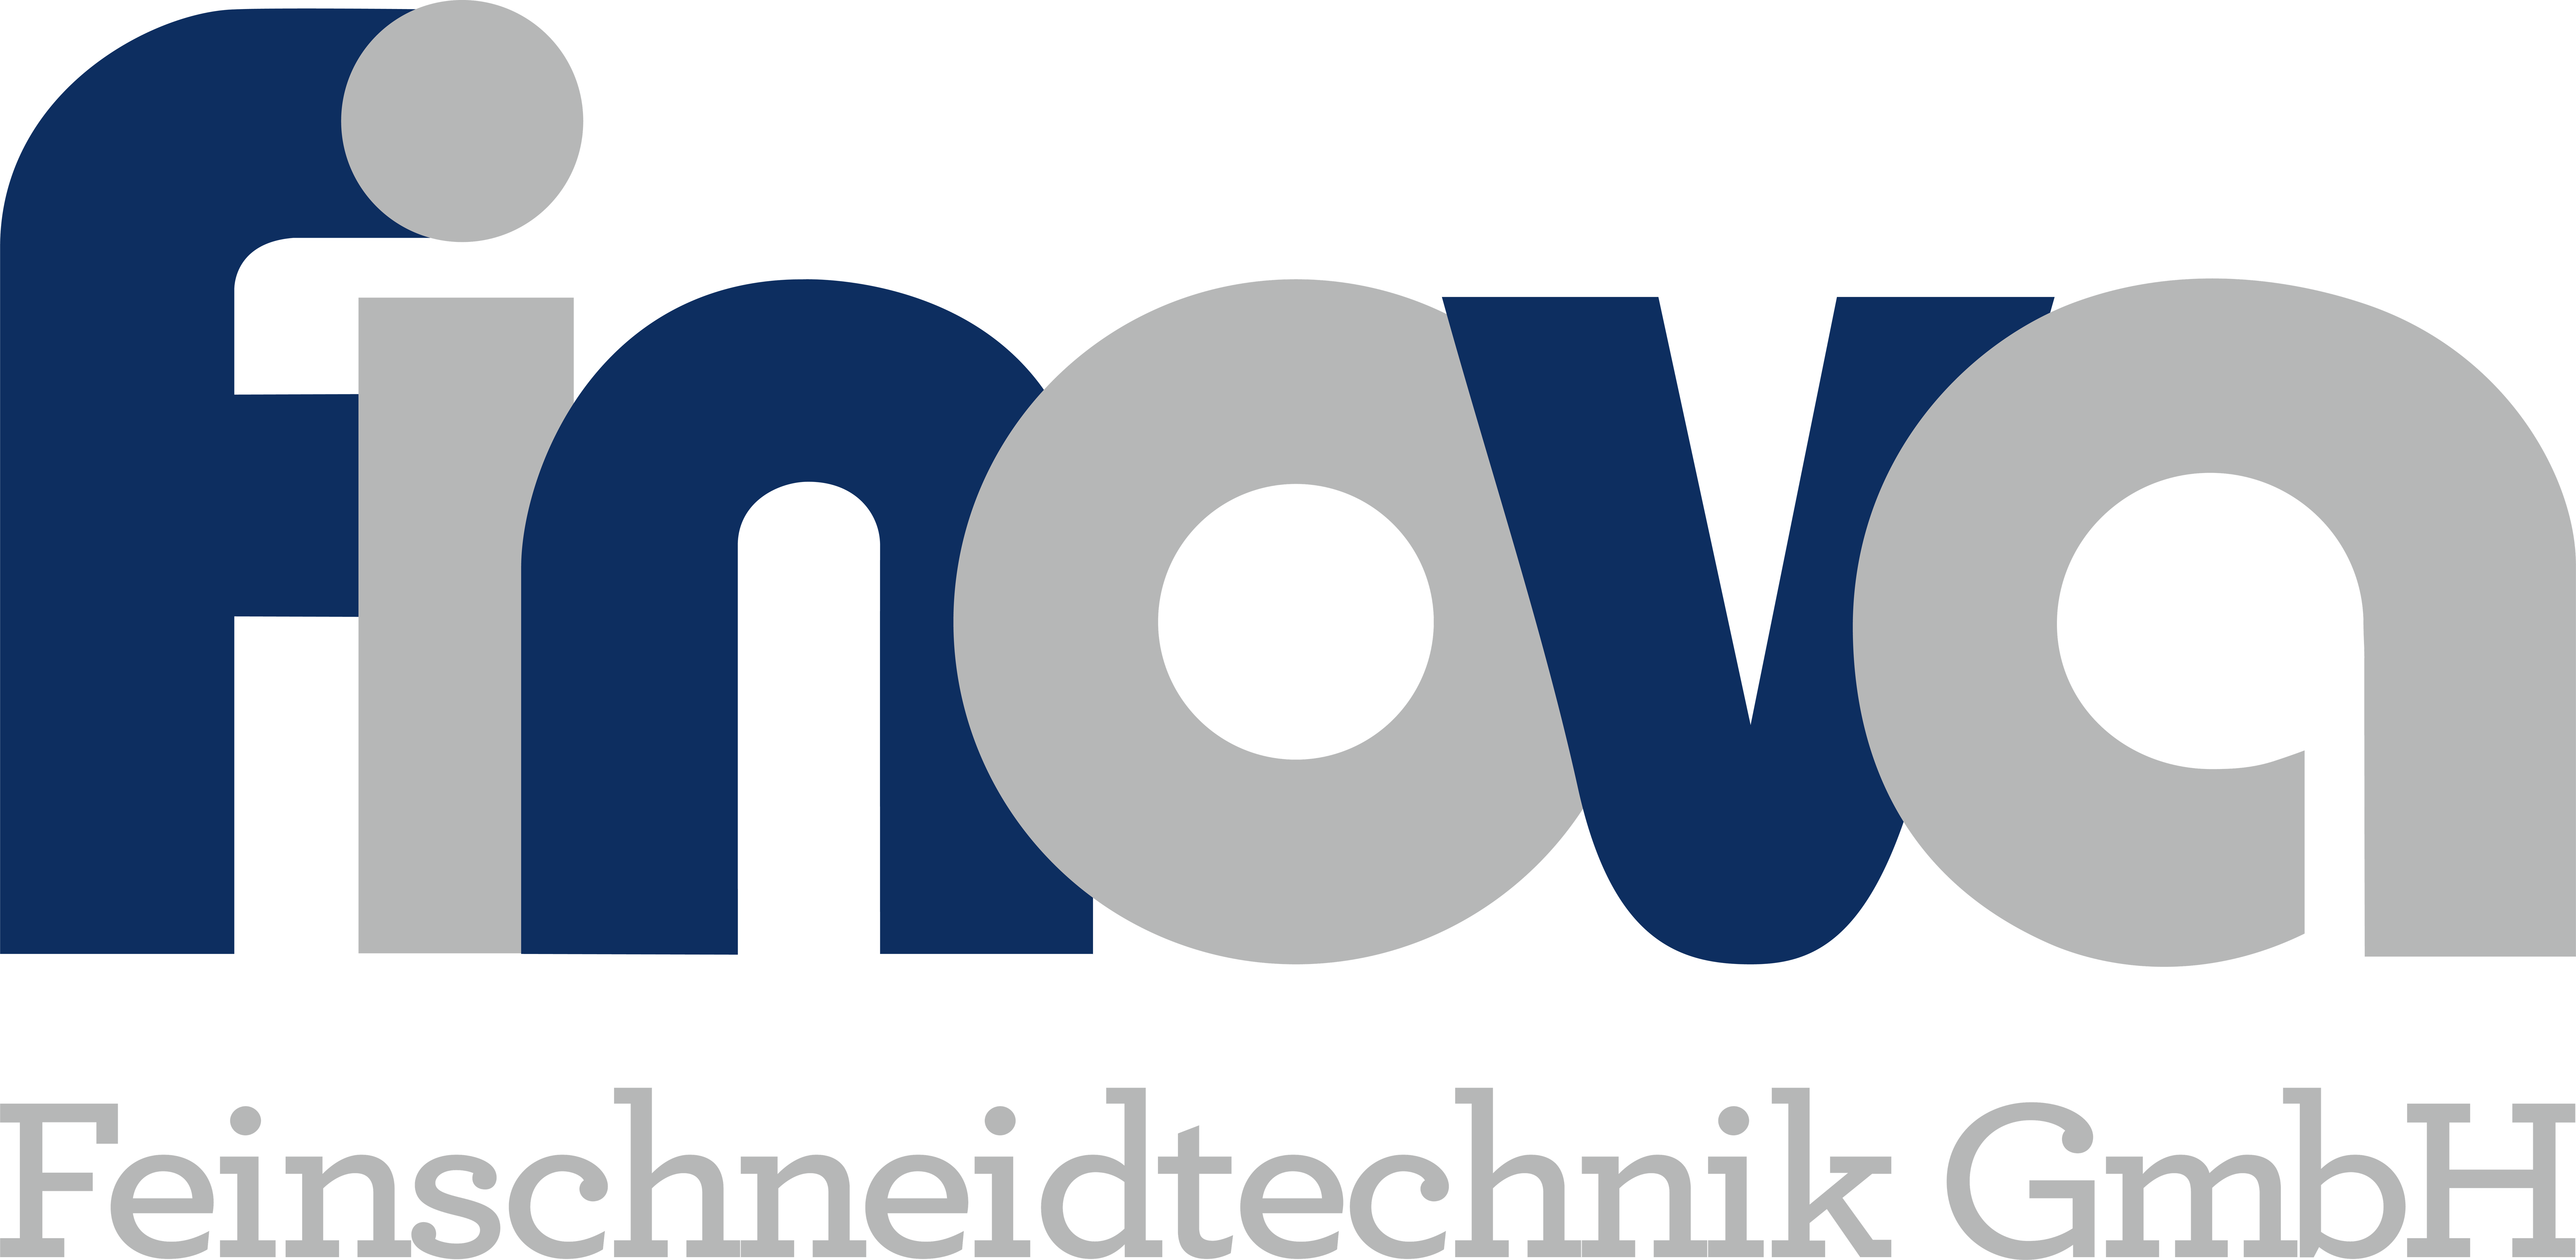 finova Feinschneidtechnik GmbH Logo